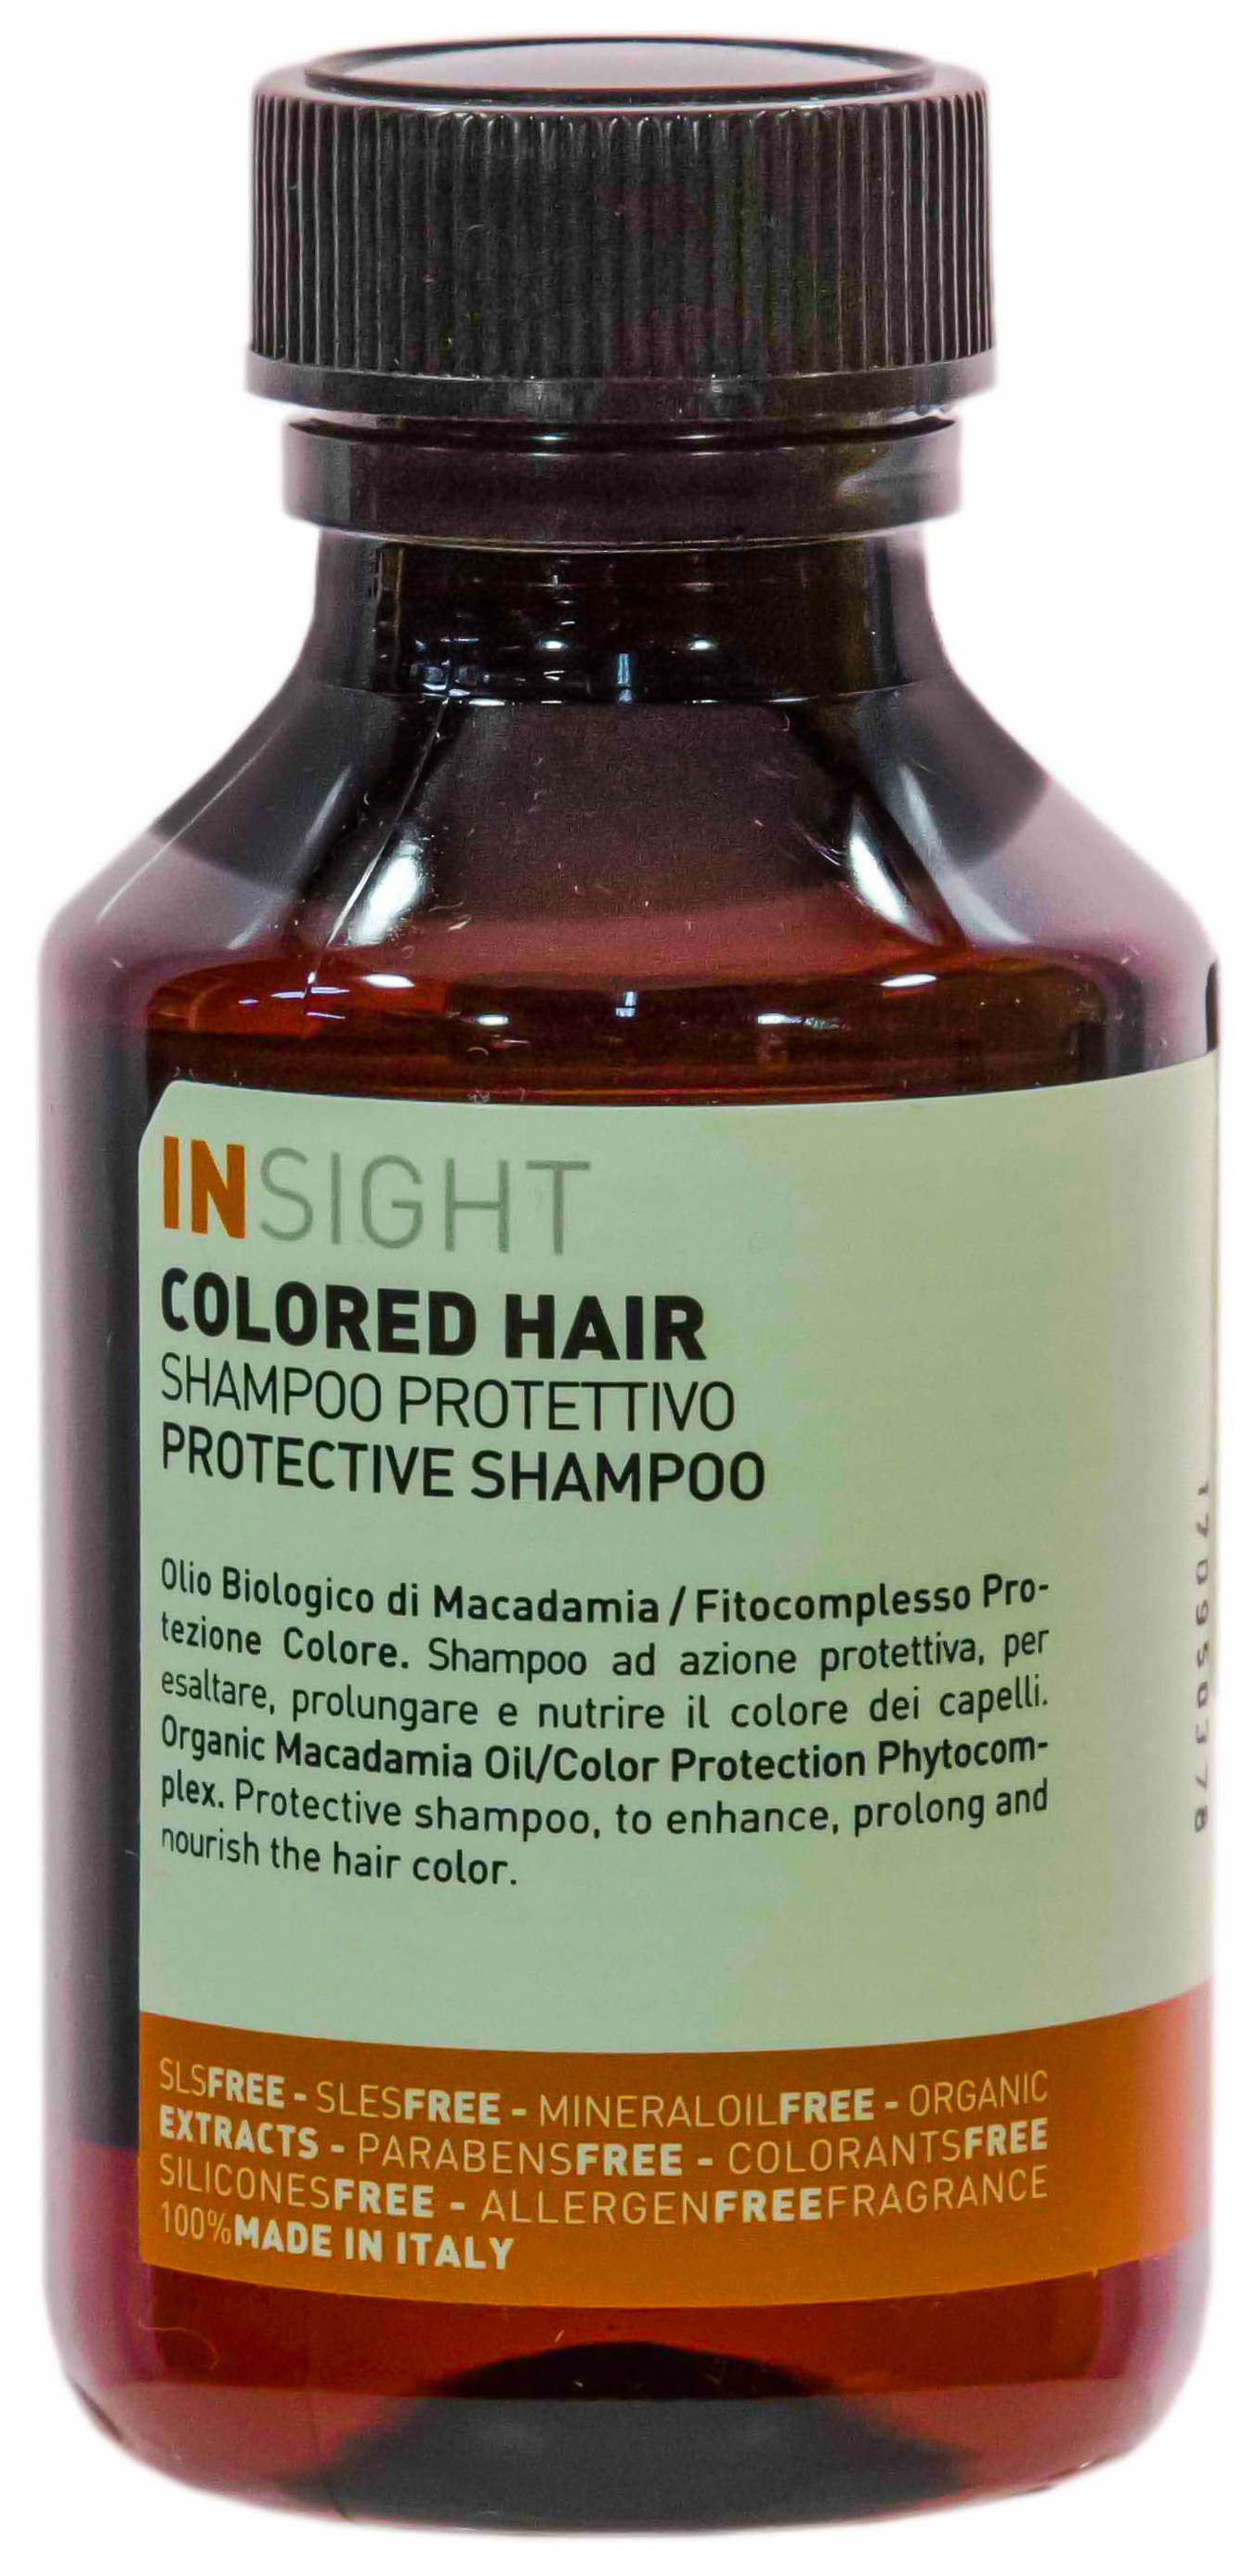 Шампунь Insight Colored Hair Protective Shampoo 100 мл шампунь insight colored hair protective shampoo 100 мл